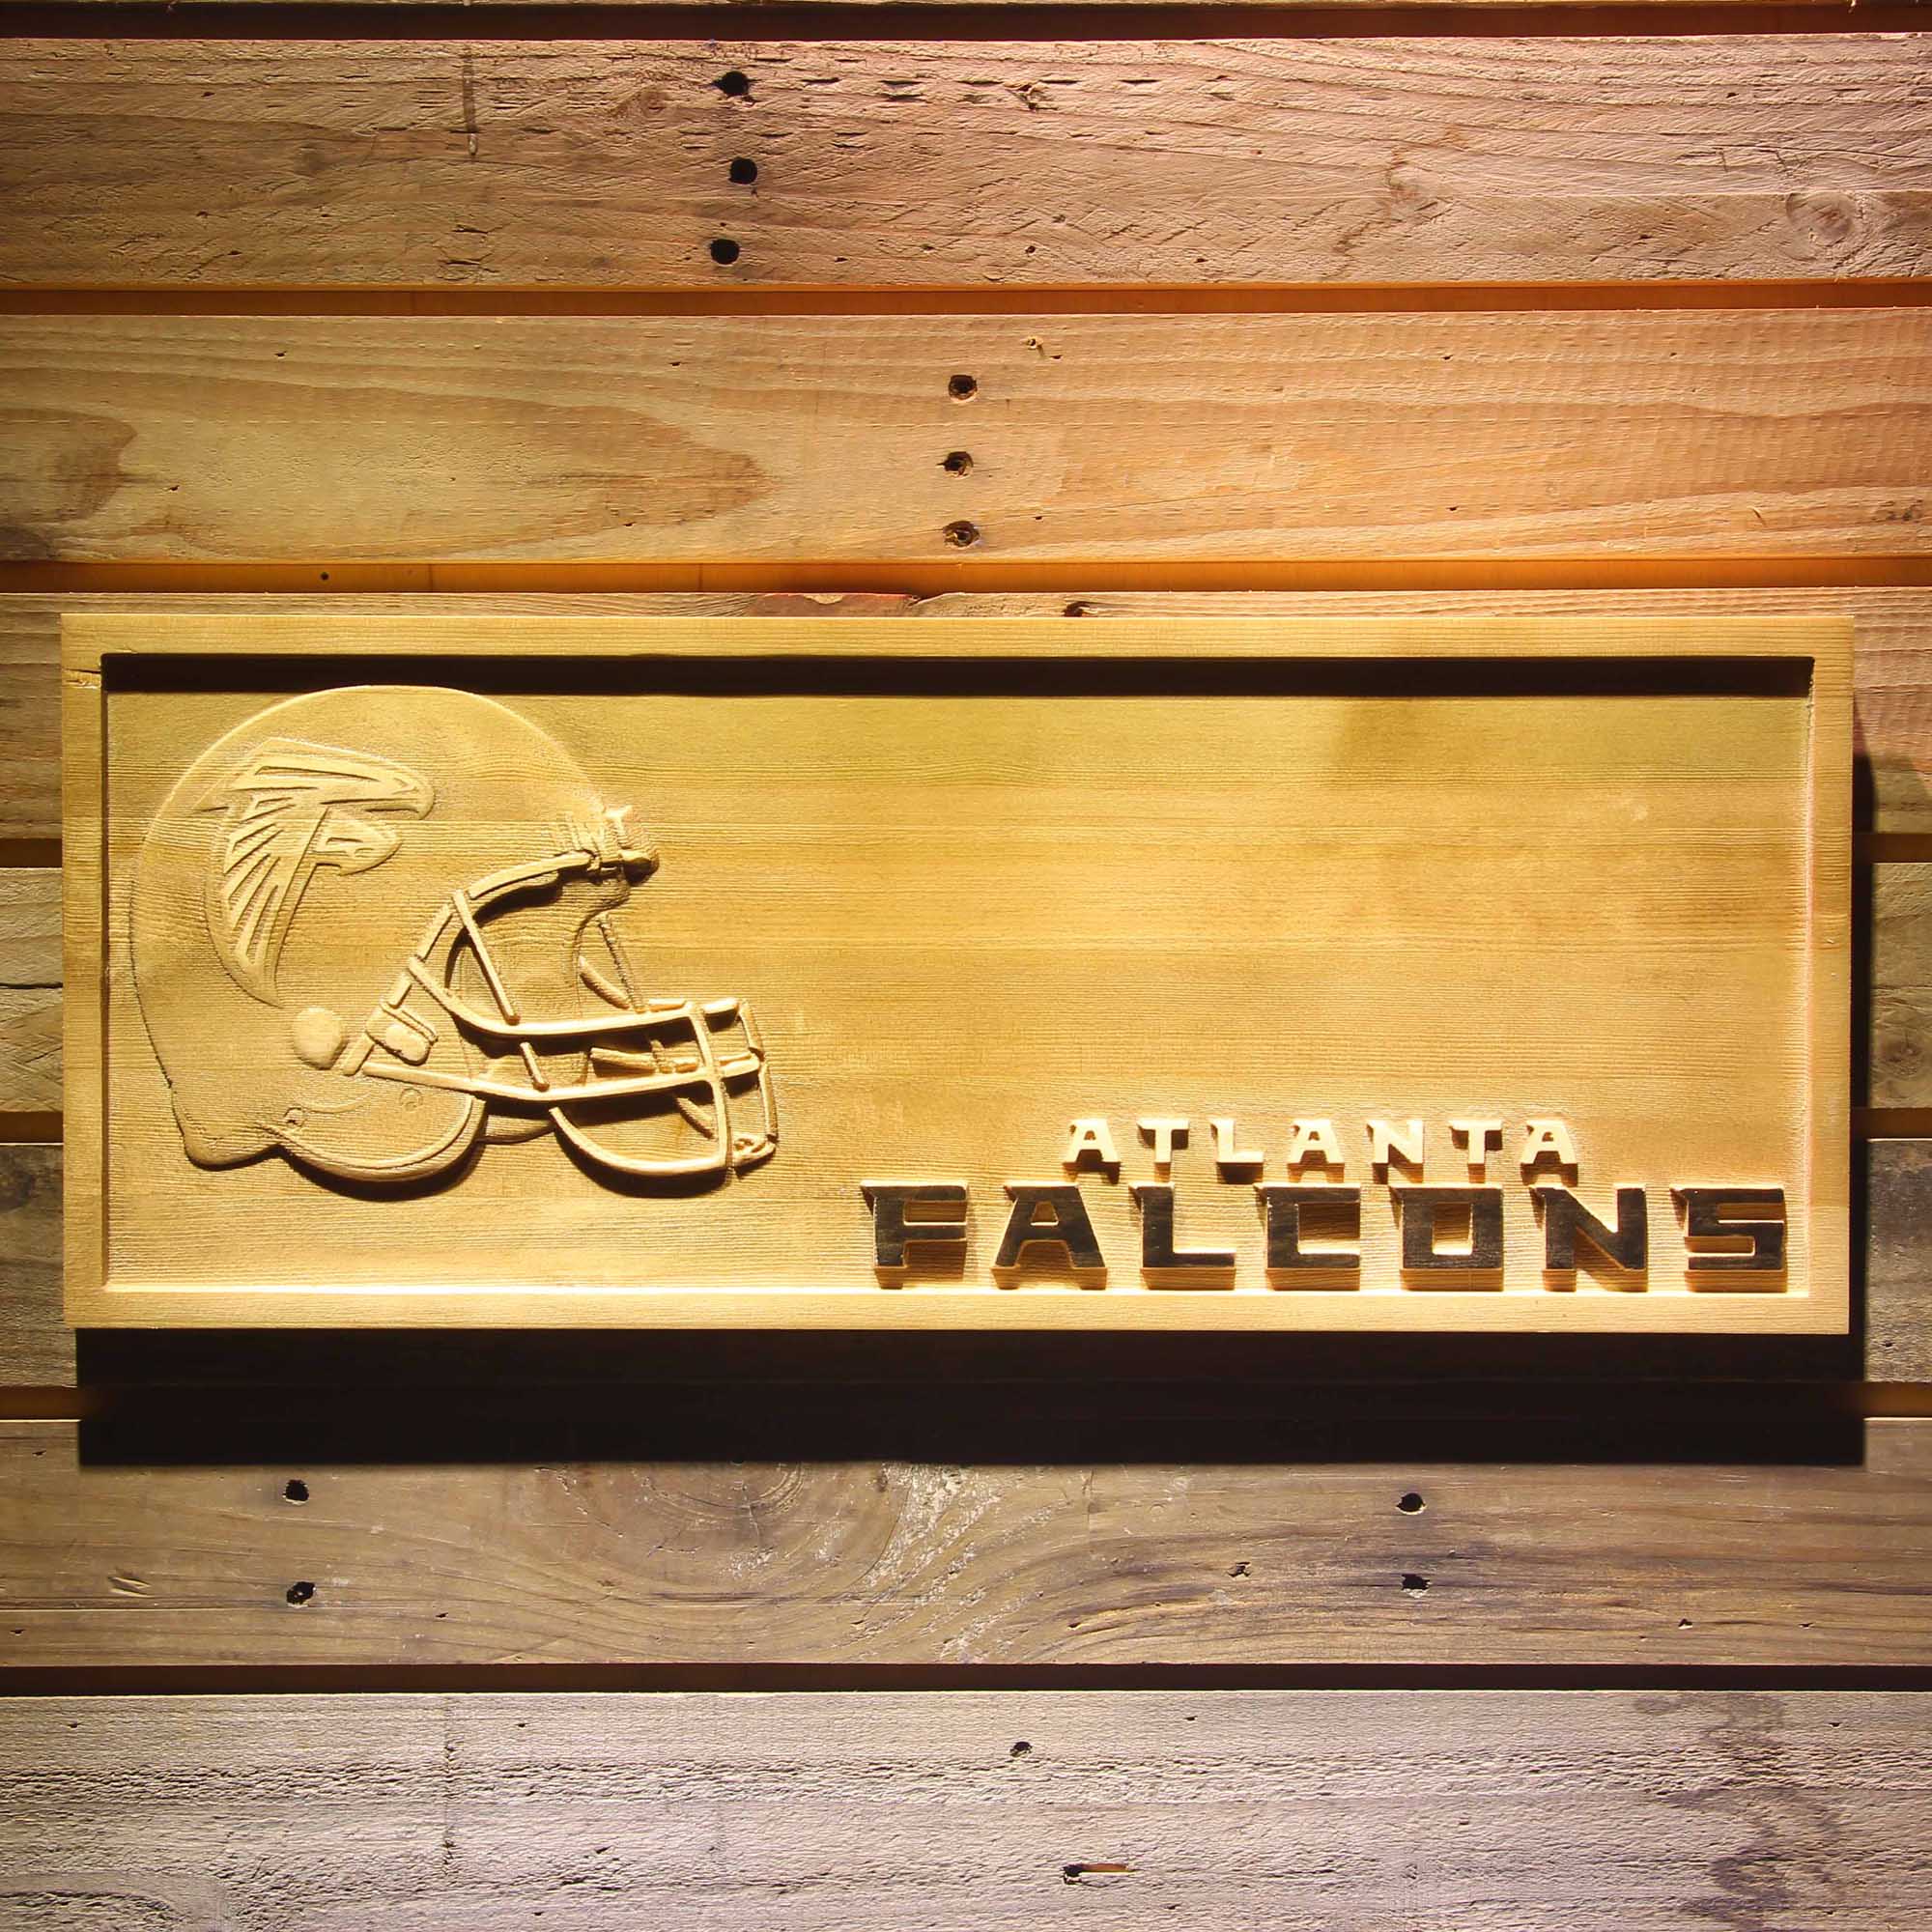 Atlanta Falcons 3D Solid Wooden Craving Sign